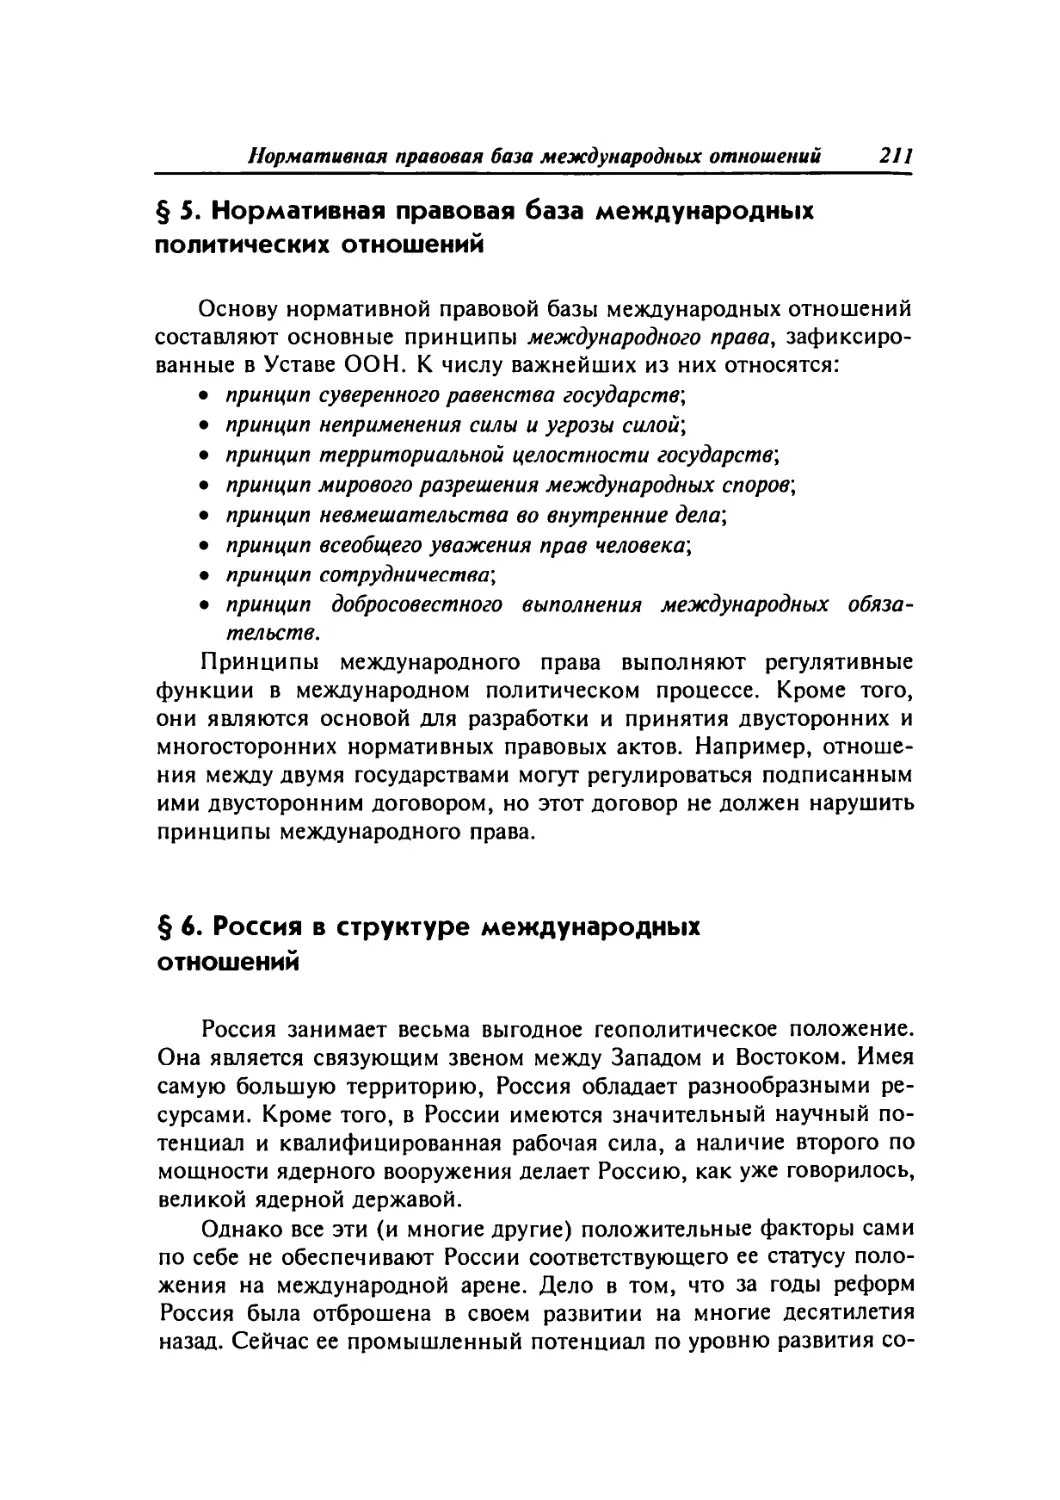 § 5. Нормативная правовая база международных политических отношений
§ 6. Россия в структуре международных отношений